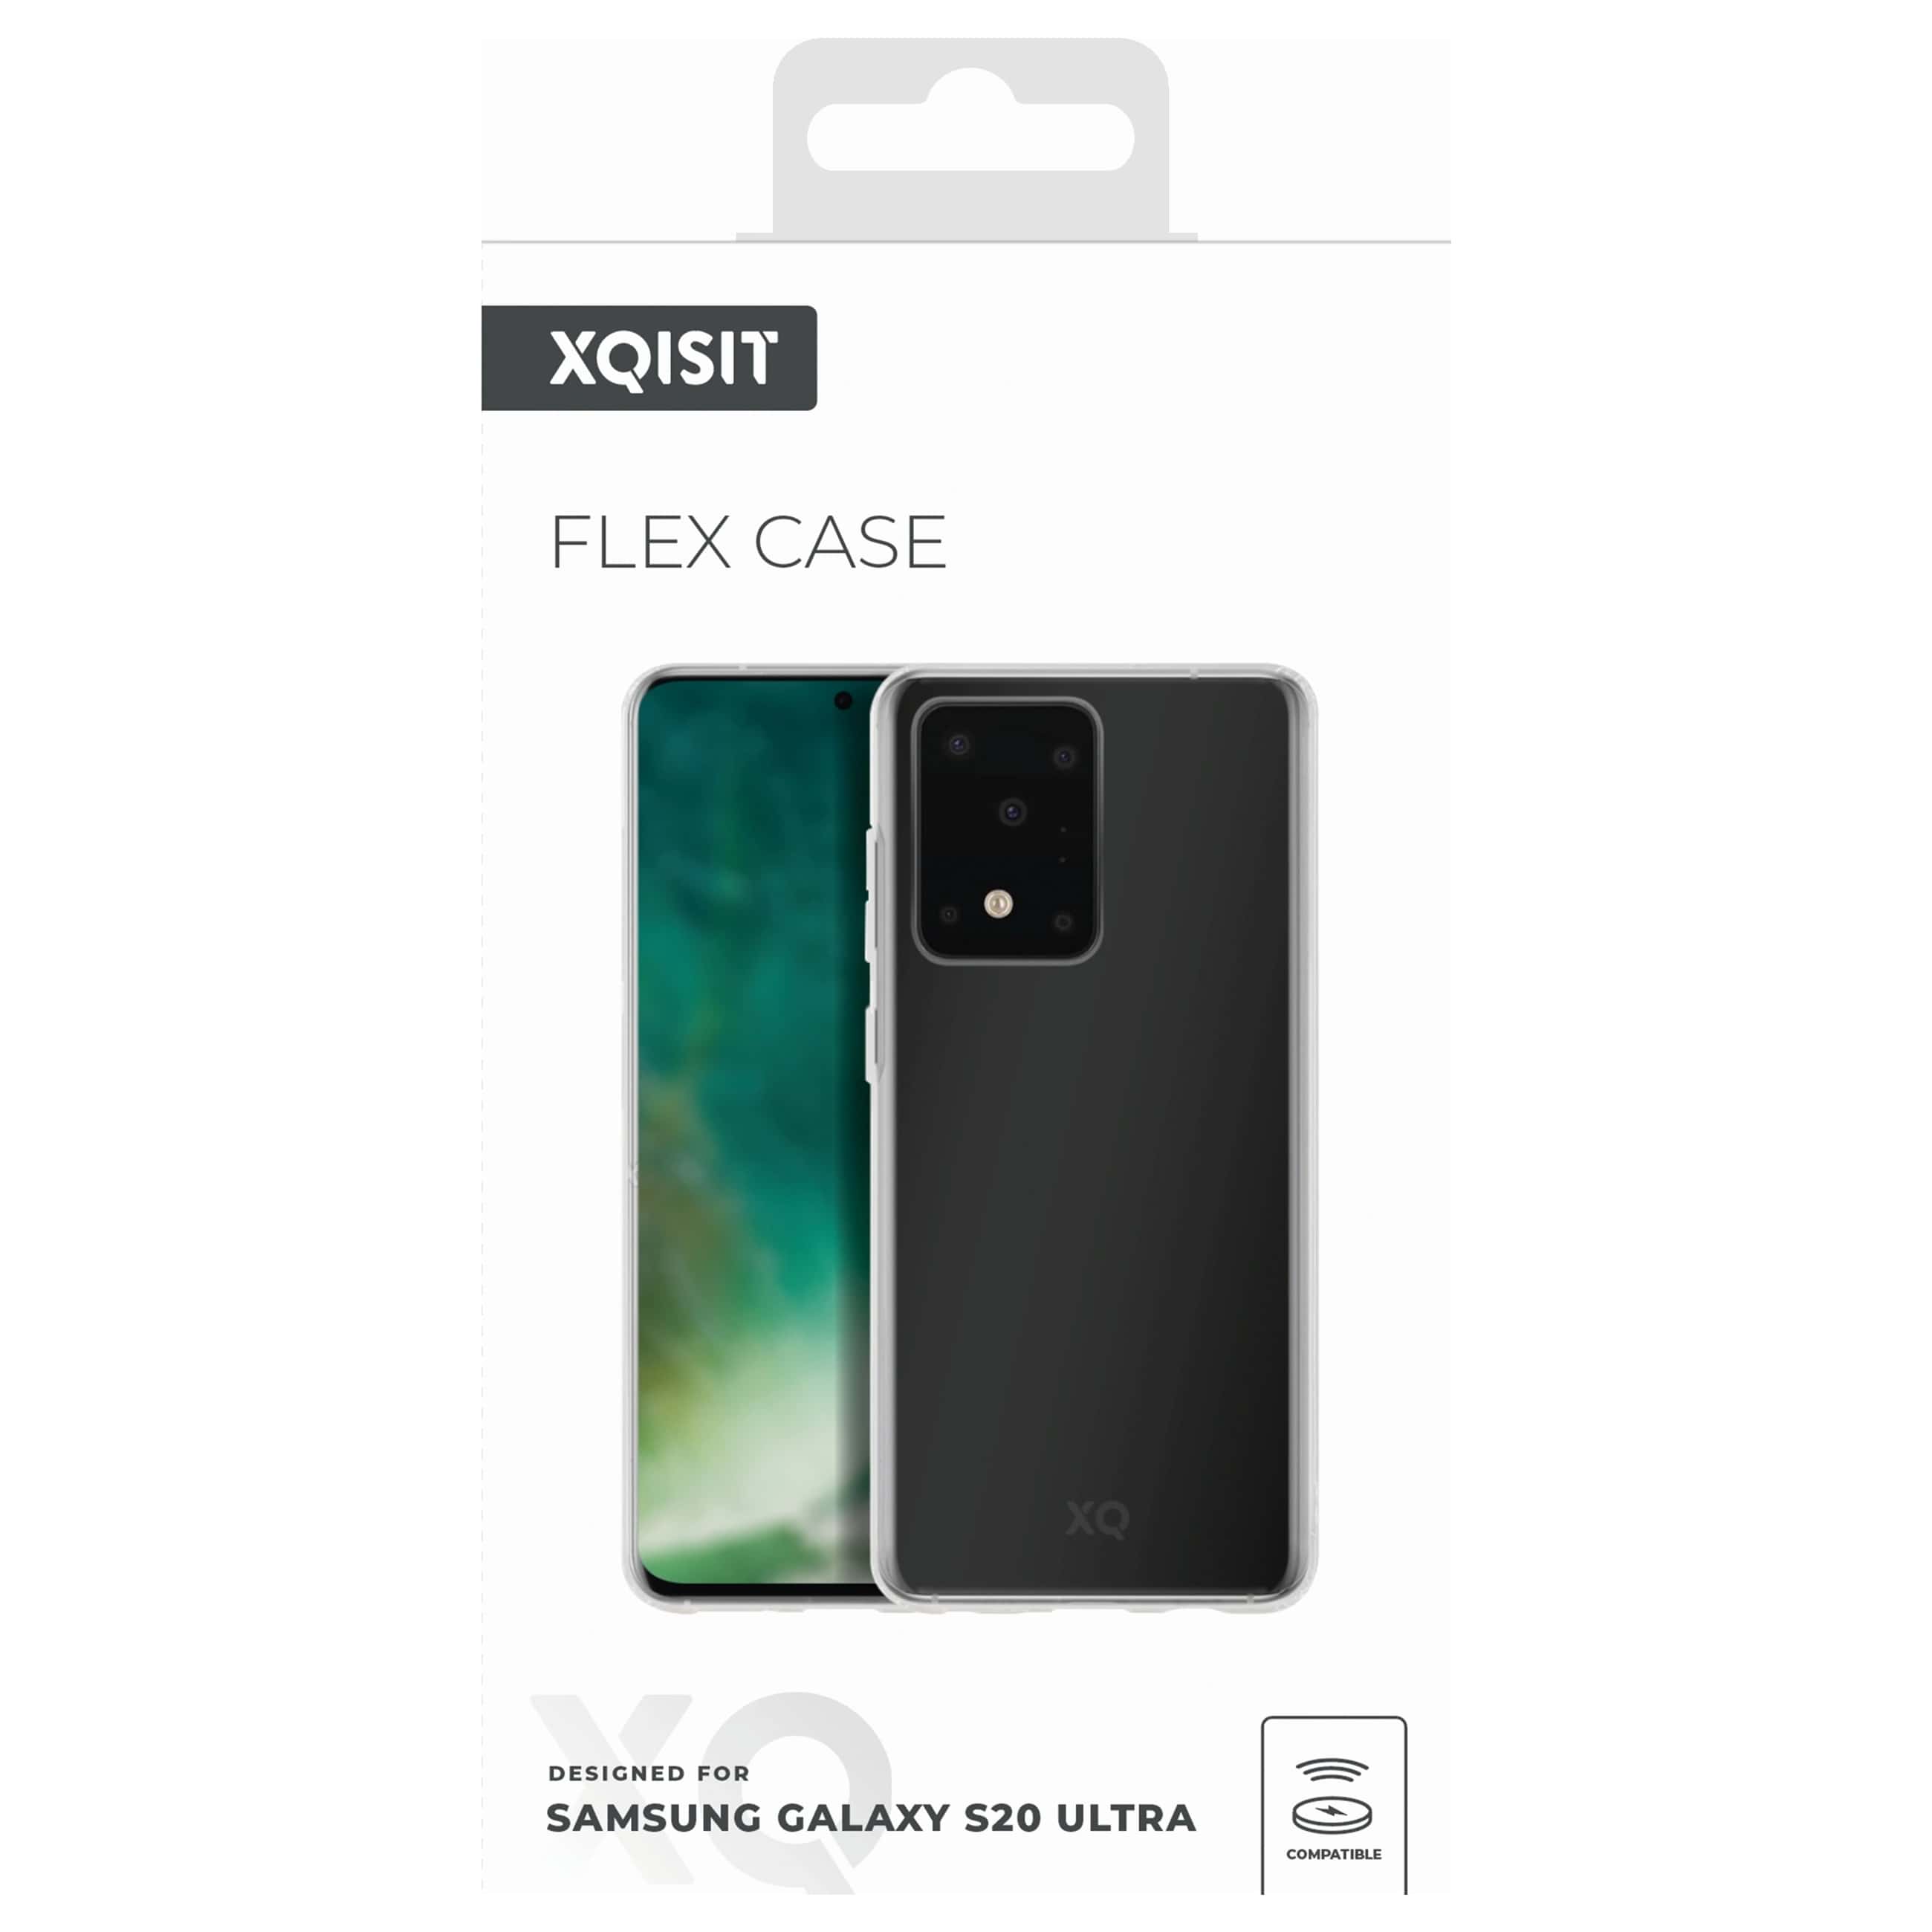 Xqisit Flex Case - Smartphone SchutzhülleNeuware -